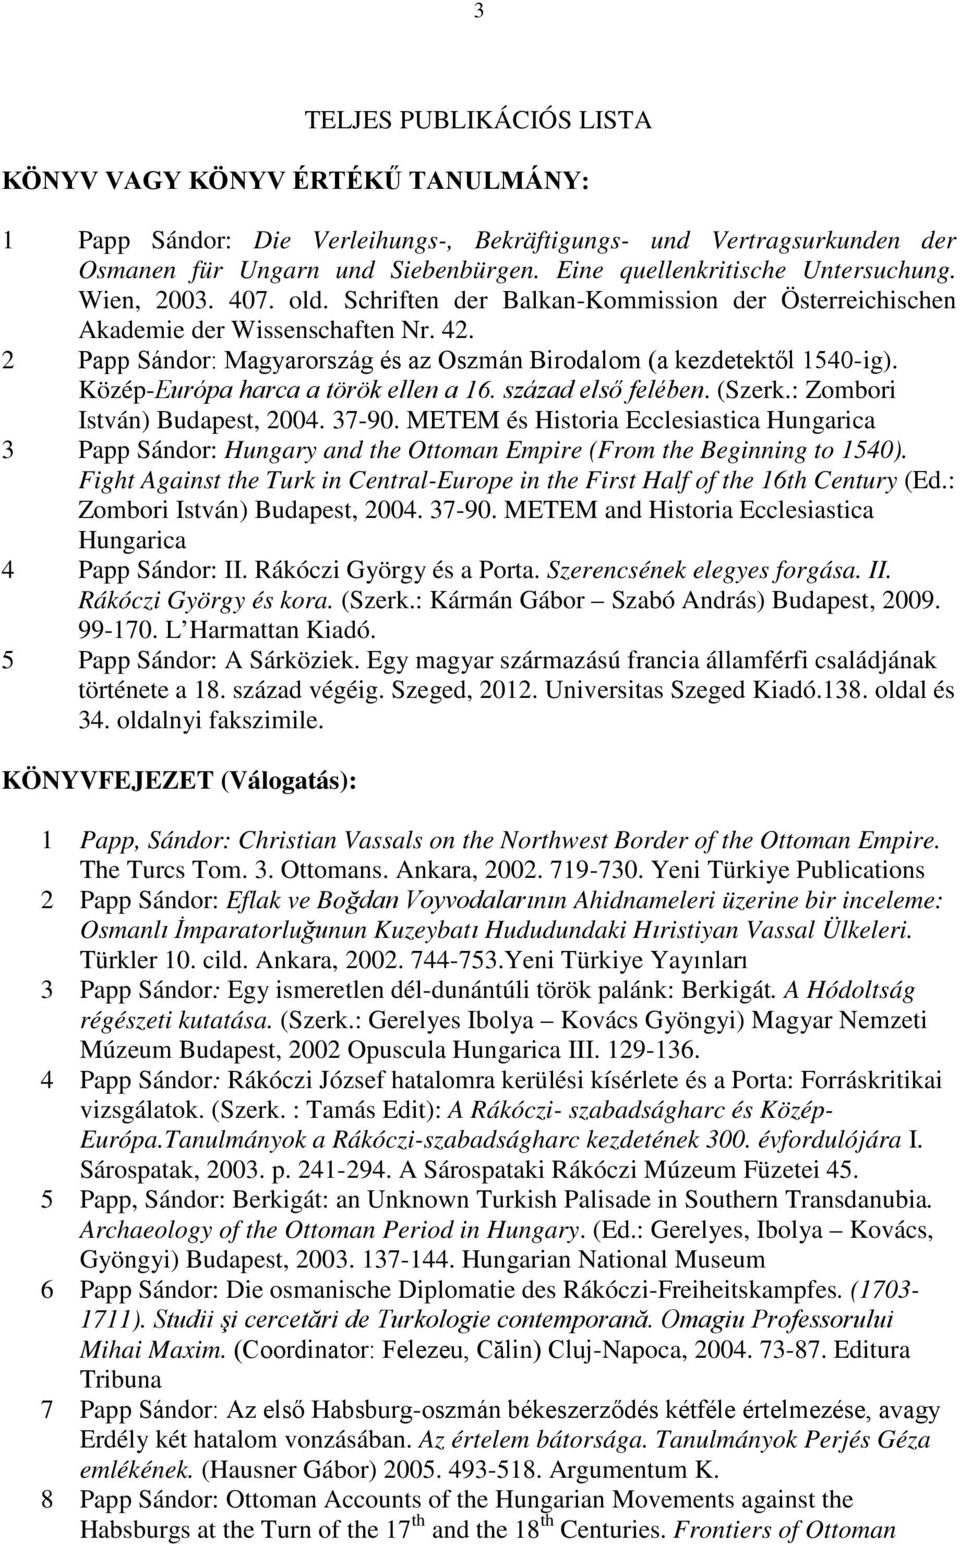 2 Papp Sándor: Magyarország és az Oszmán Birodalom (a kezdetektől 1540-ig). Közép-Európa harca a török ellen a 16. század első felében. (Szerk.: Zombori István) Budapest, 2004. 37-90.